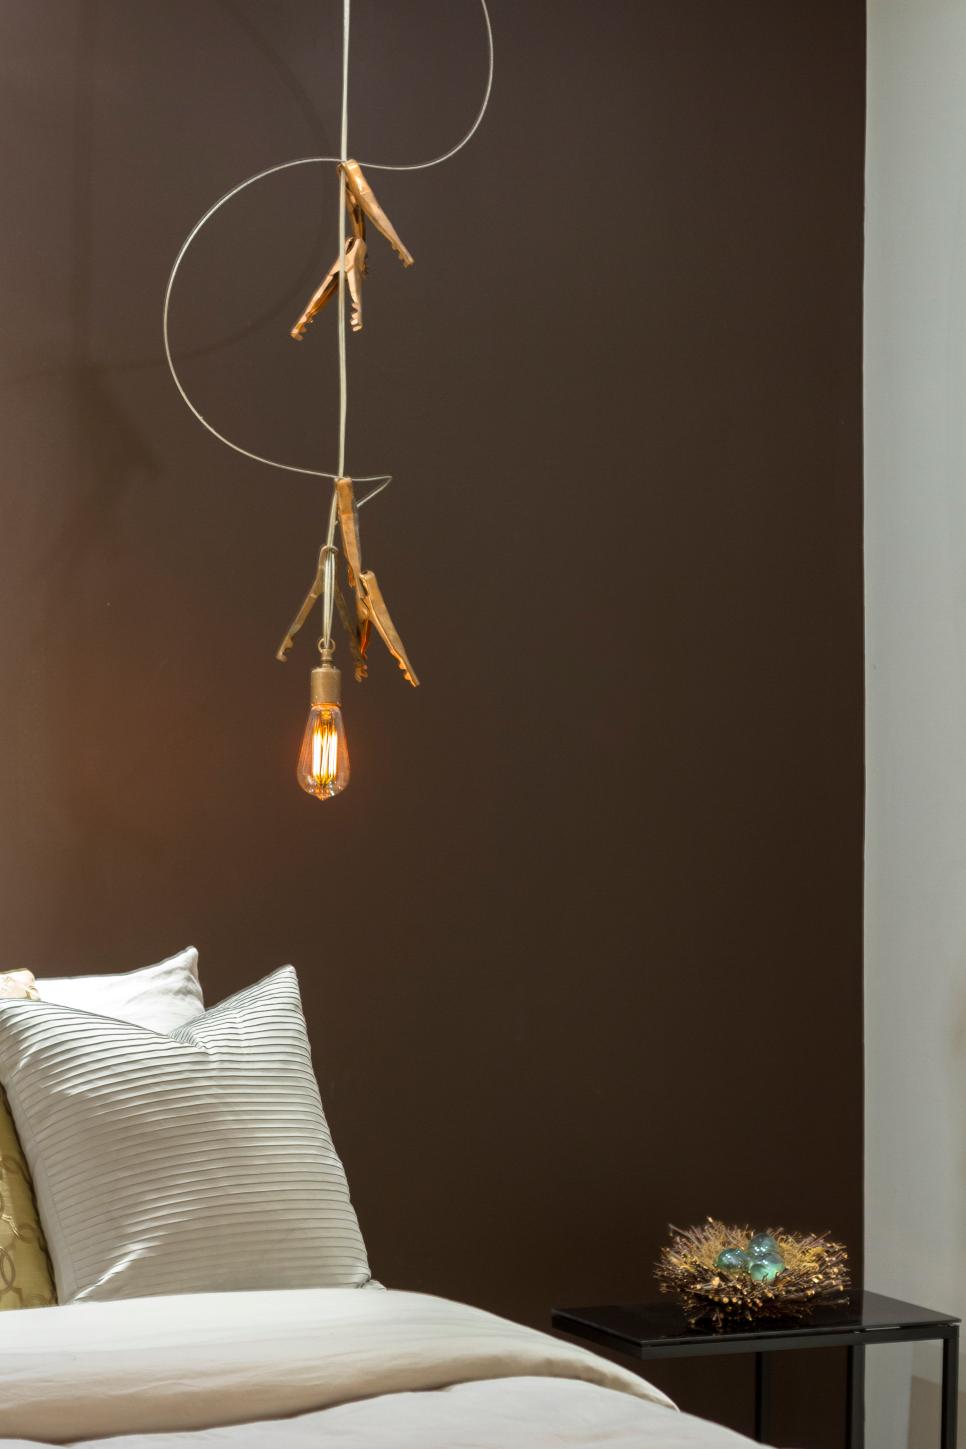 Pendant Lights in Master Bedroom | HGTV